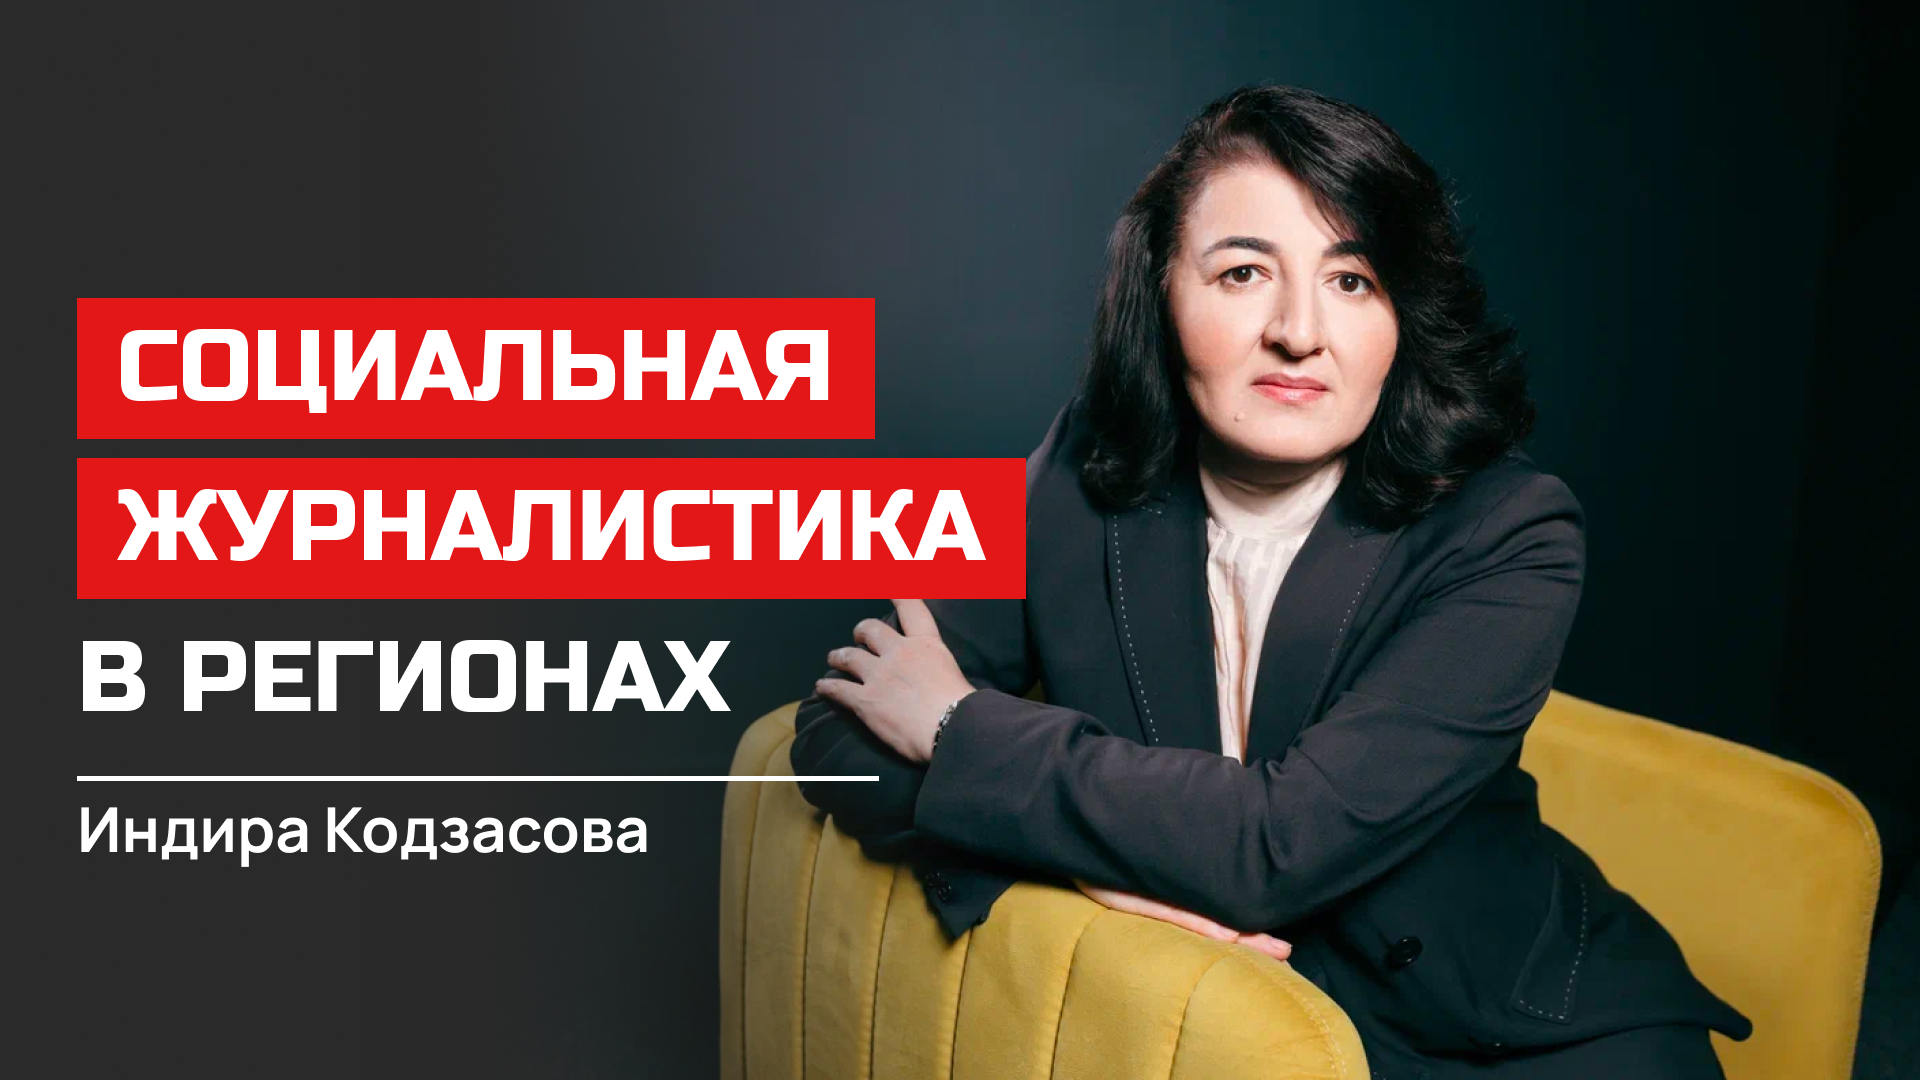 Индира Кодзасова. Социальная журналистика в регионах